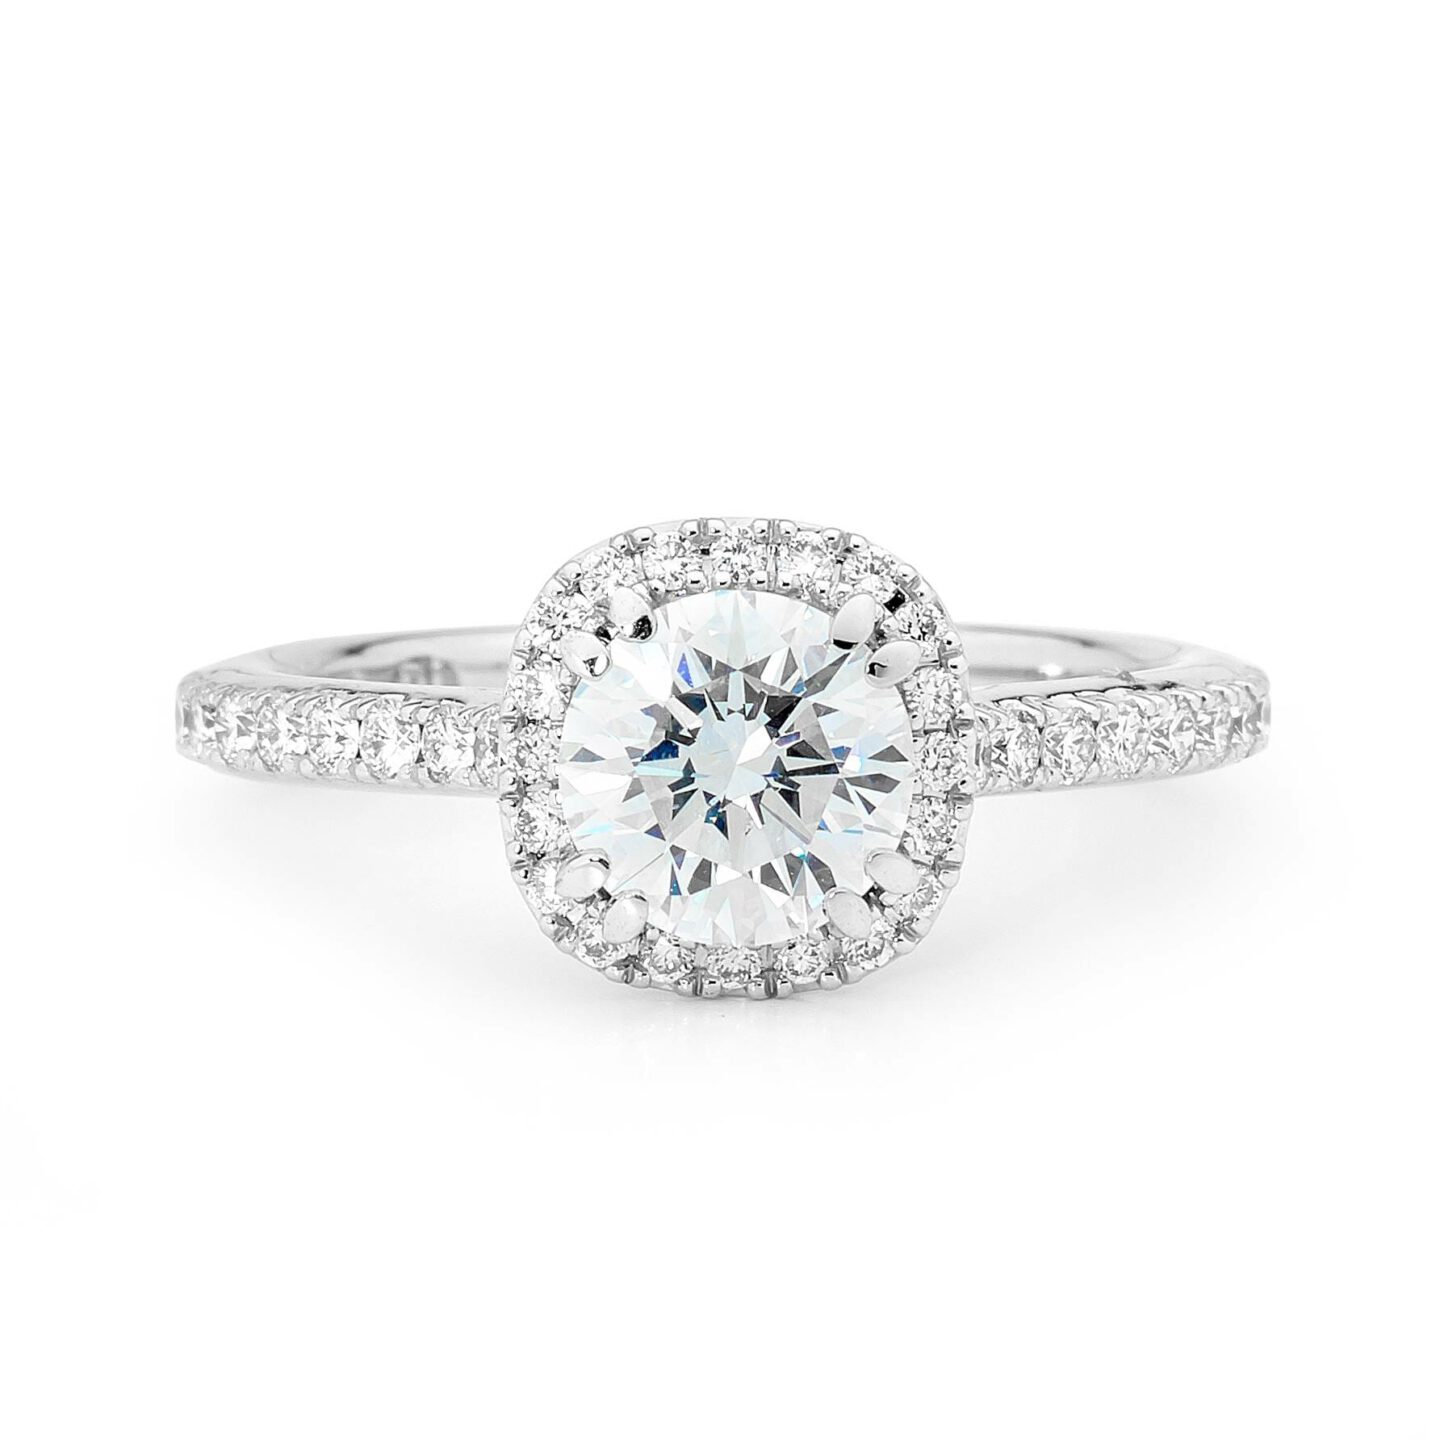 Ester – Round Brilliant Cut Diamond Engagement Ring